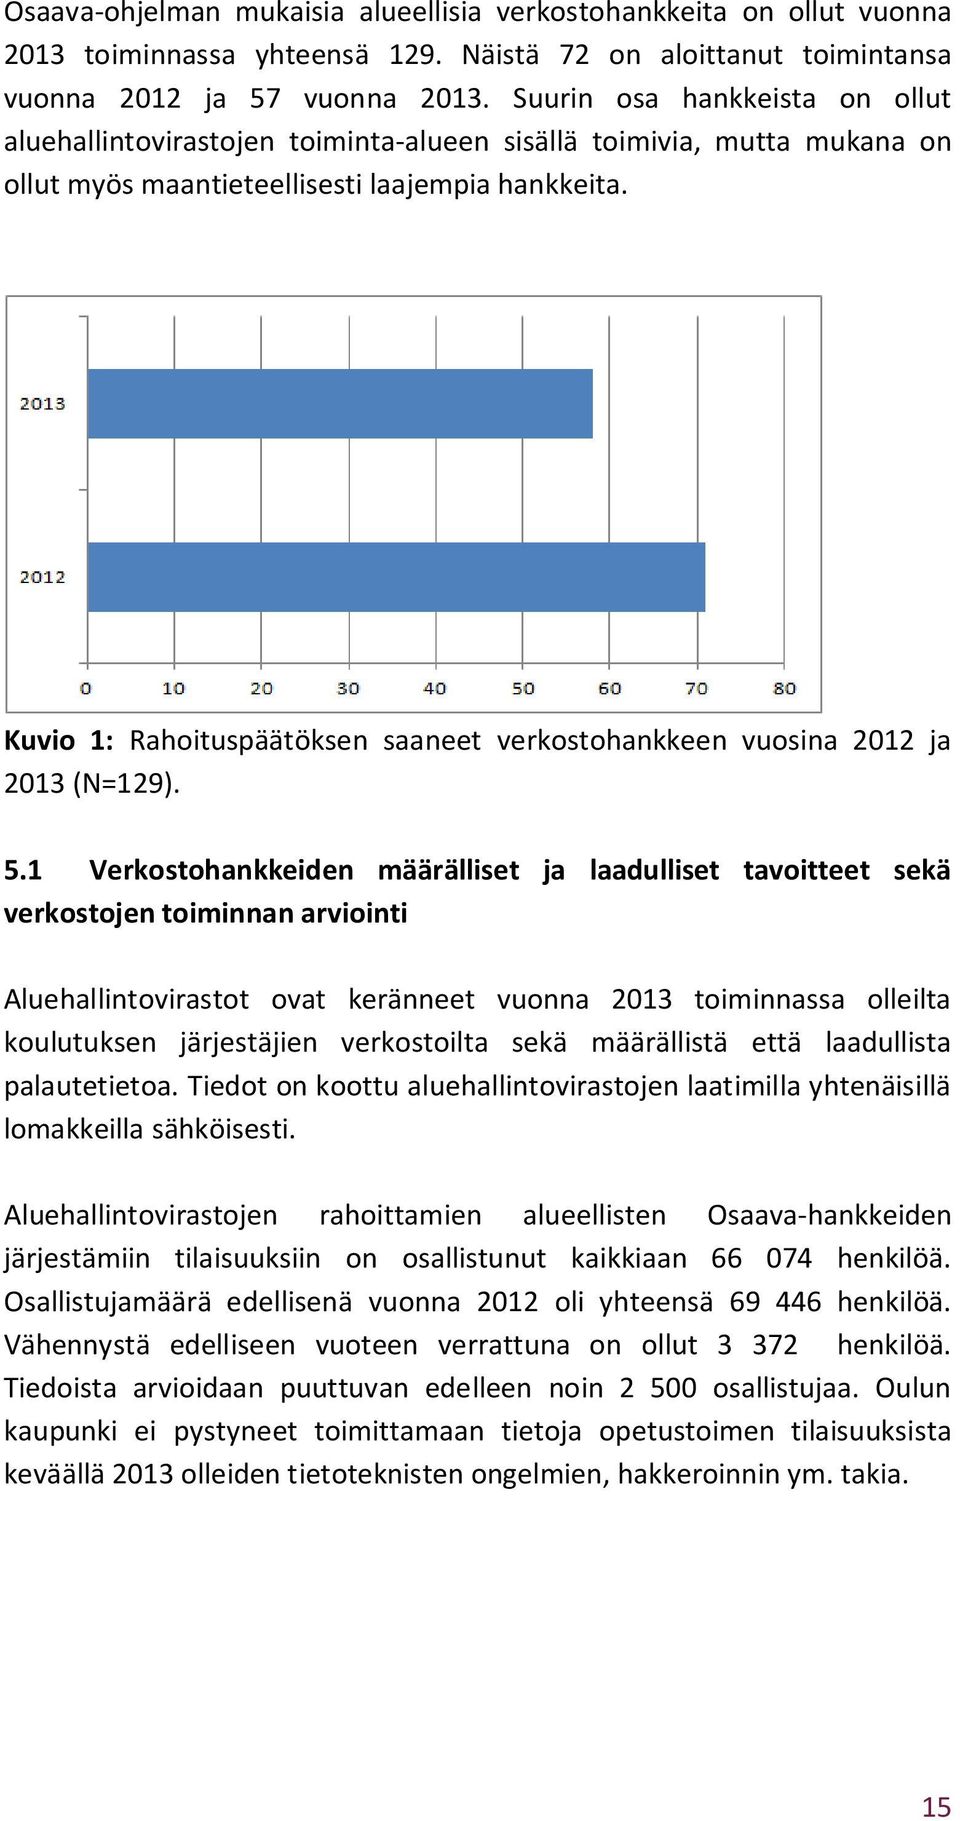 Kuvio 1: Rahoituspäätöksen saaneet verkostohankkeen vuosina 2012 ja 2013 (N=129). 5.